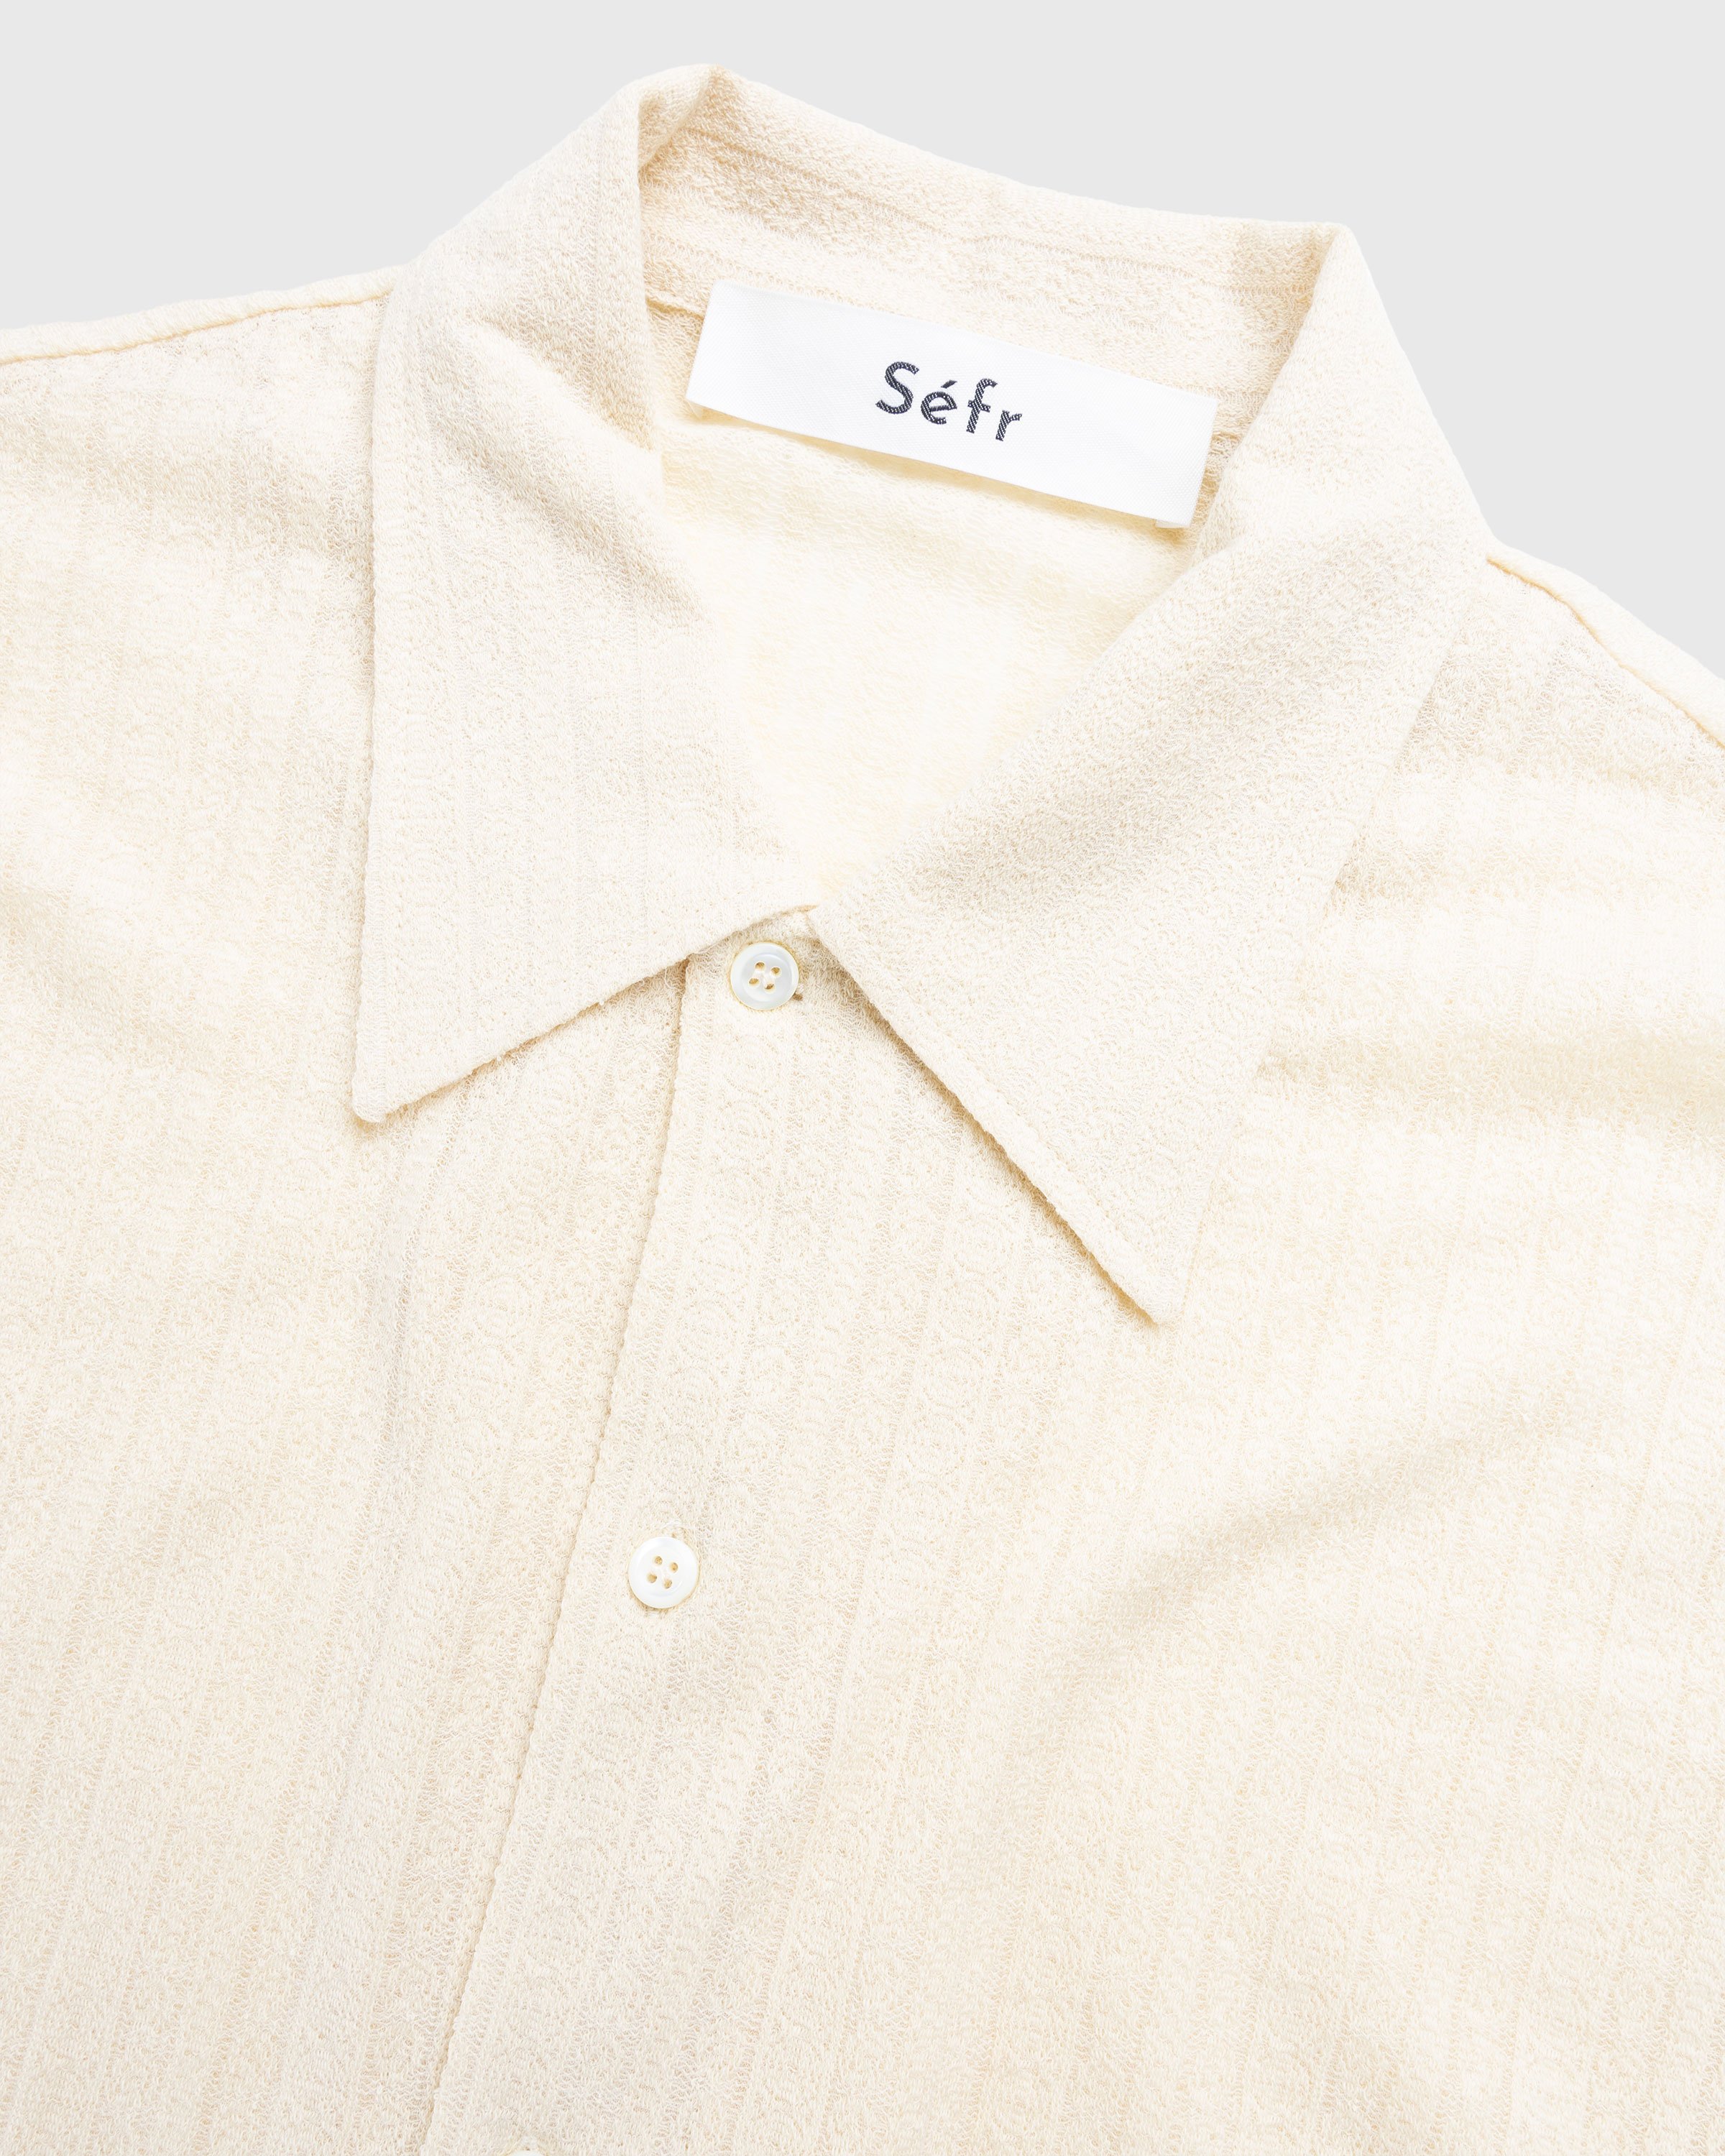 Séfr - Ripley Shirt Medallion Ivory - Clothing - White - Image 5